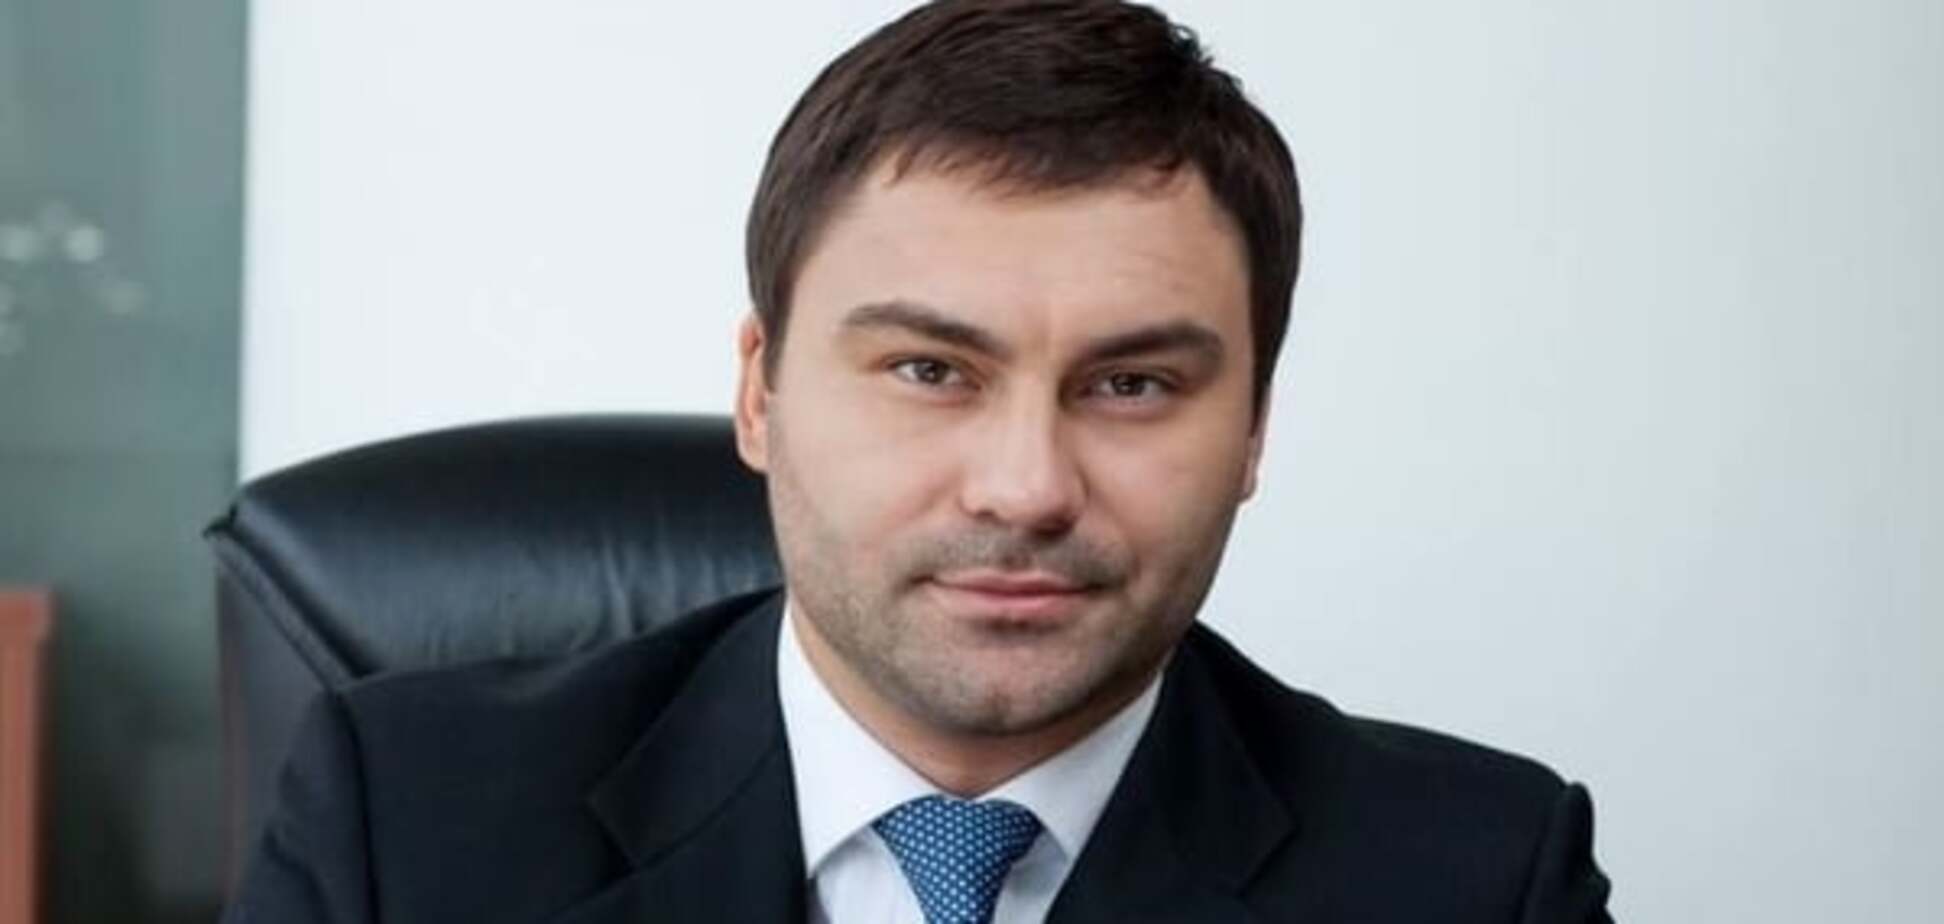 Иванюк отозвал свою кандидатуру на должность директора ГП 'Укрспирт'